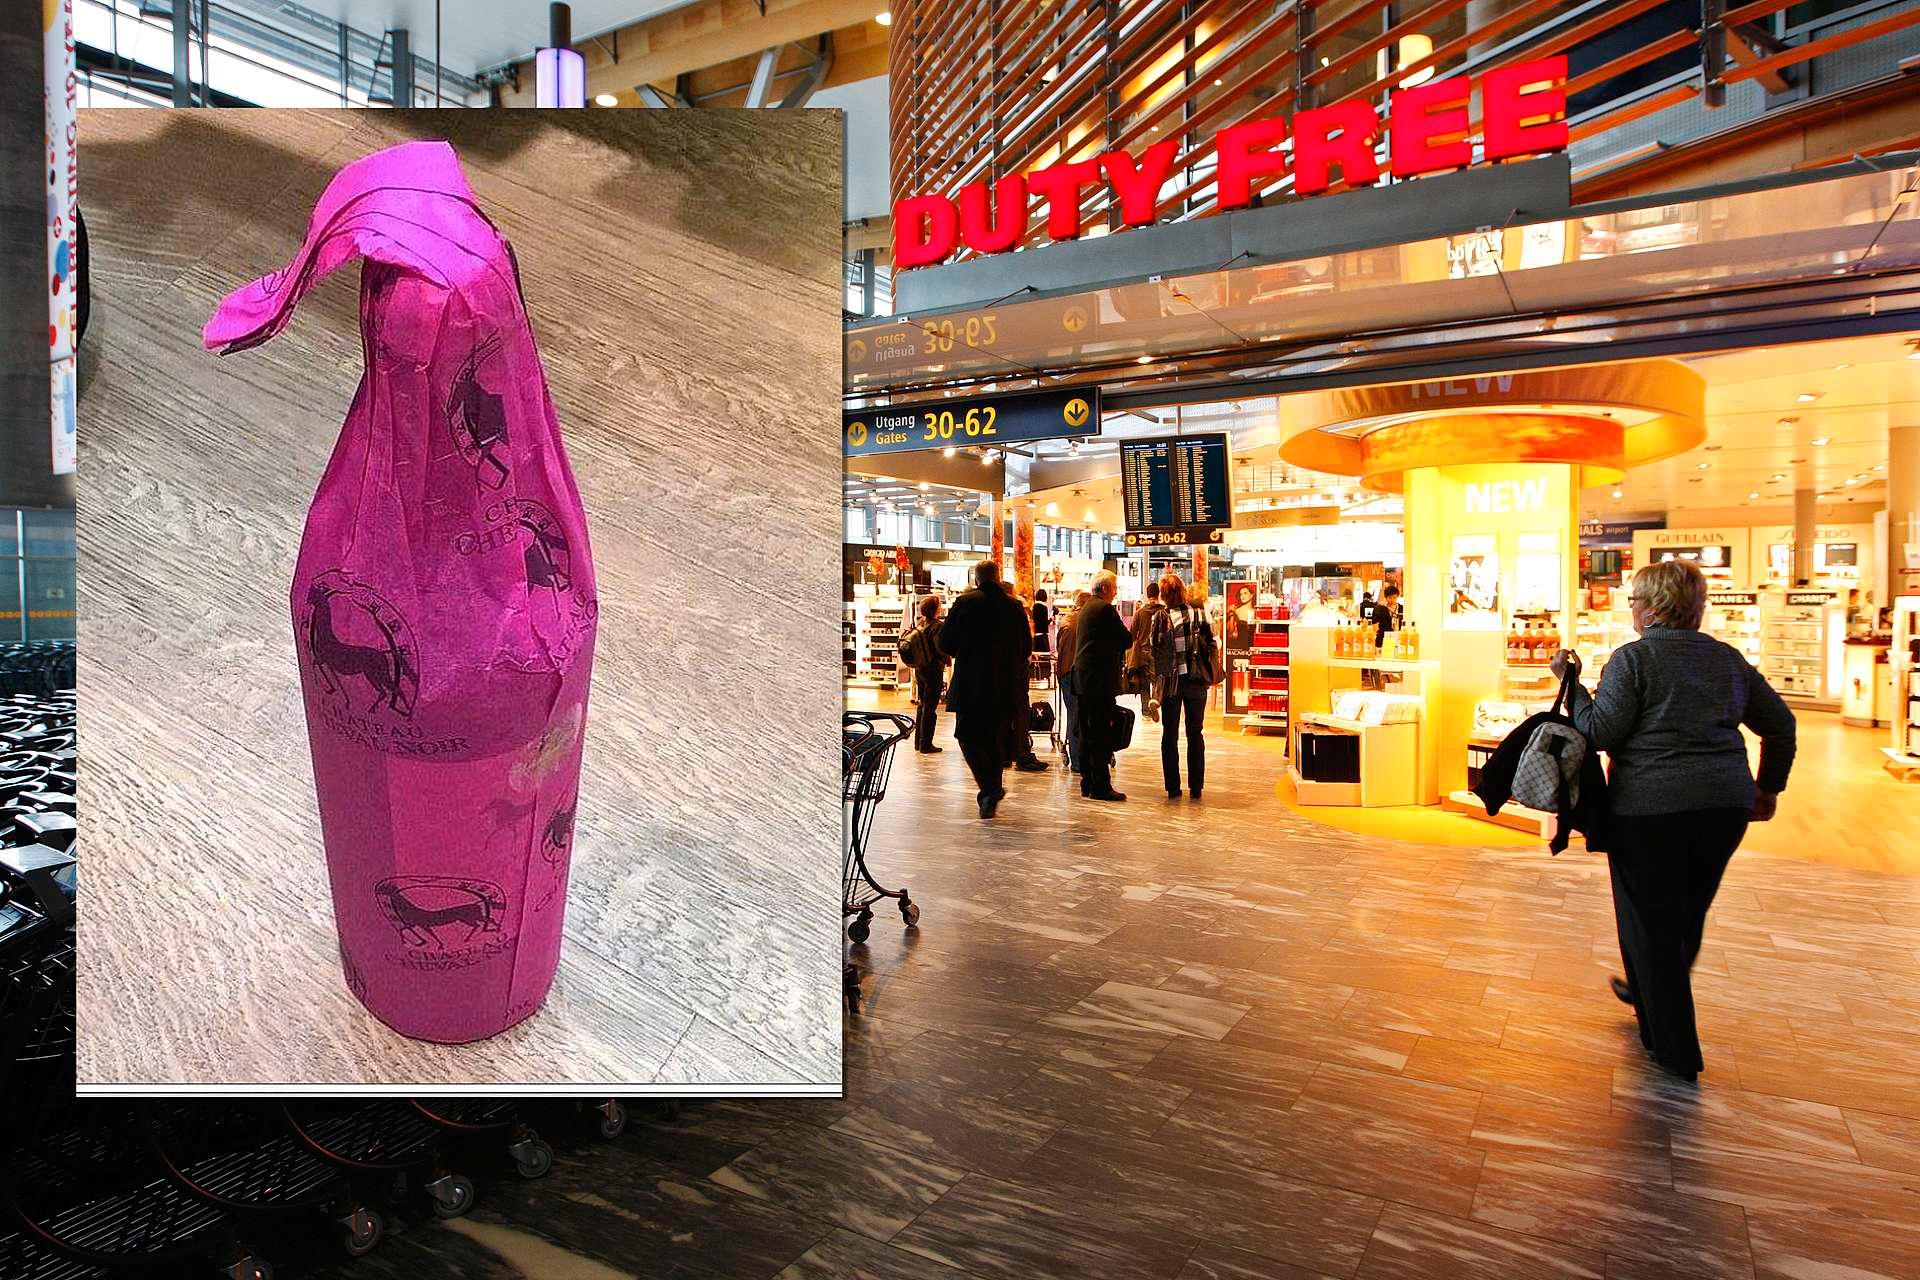 Nå fjerner taxfree-selskapet Travel Retail Norway det rosa beskyttelsespapiret fra vinflaskene, etter krav fra Helsedirektoratet.